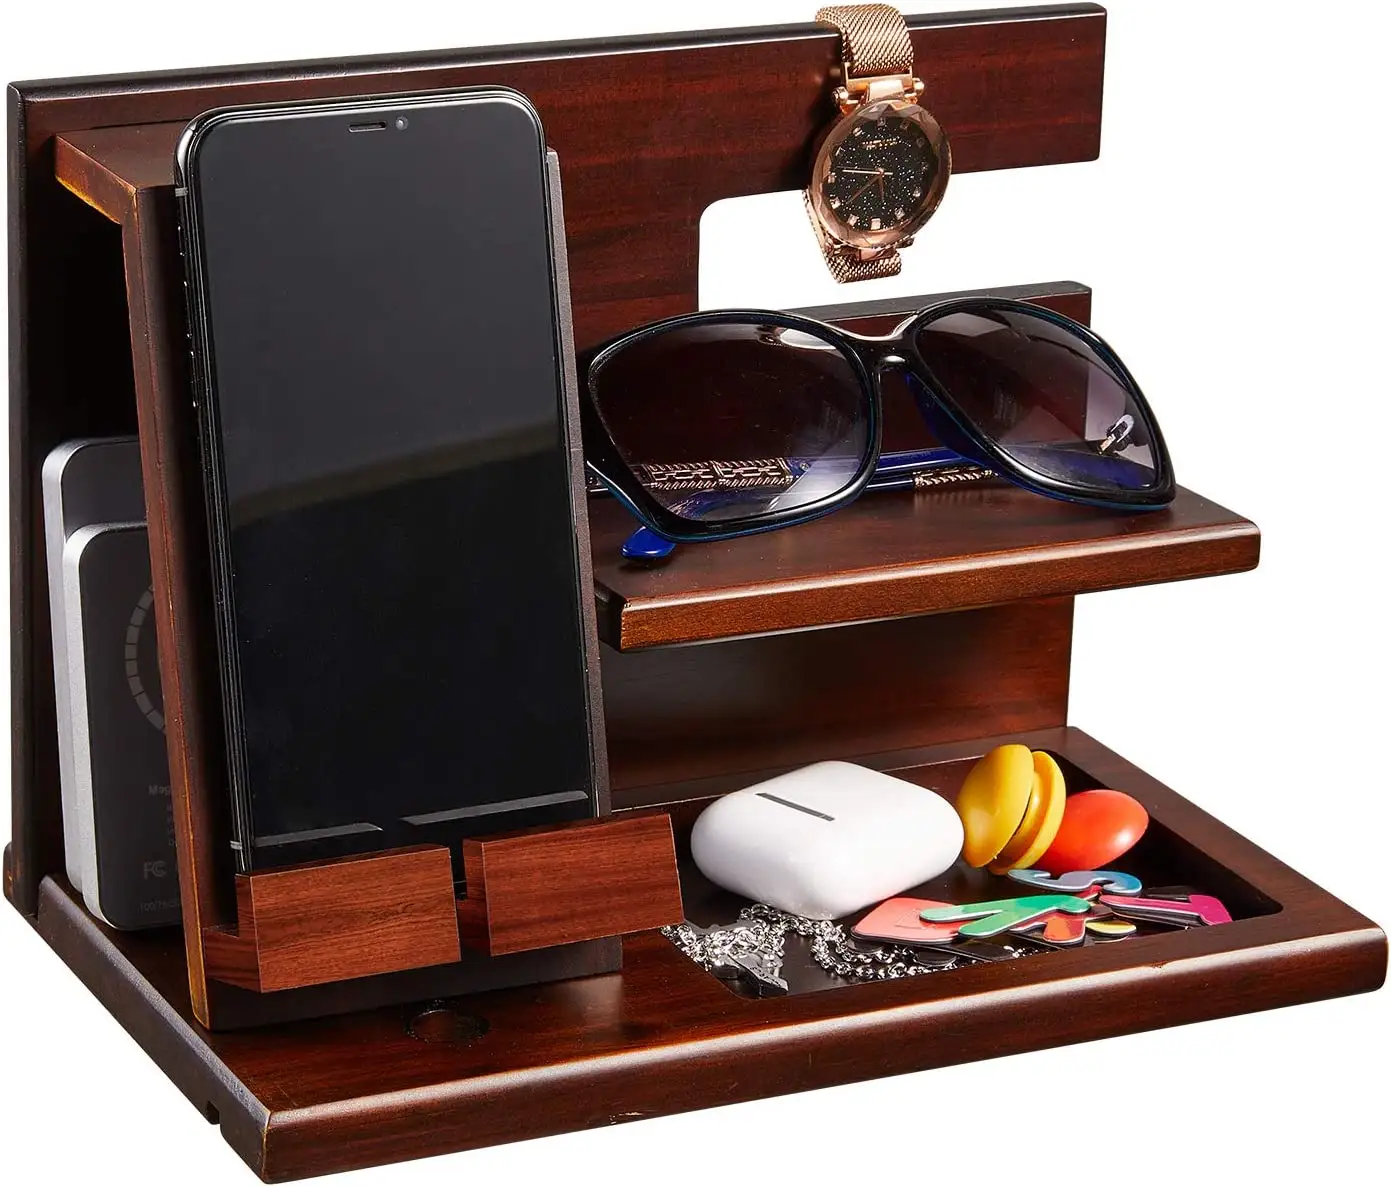 Black Wood Phone Docking Station Nightstand Organizer Desk Accessories Key Holder Watch Organizer